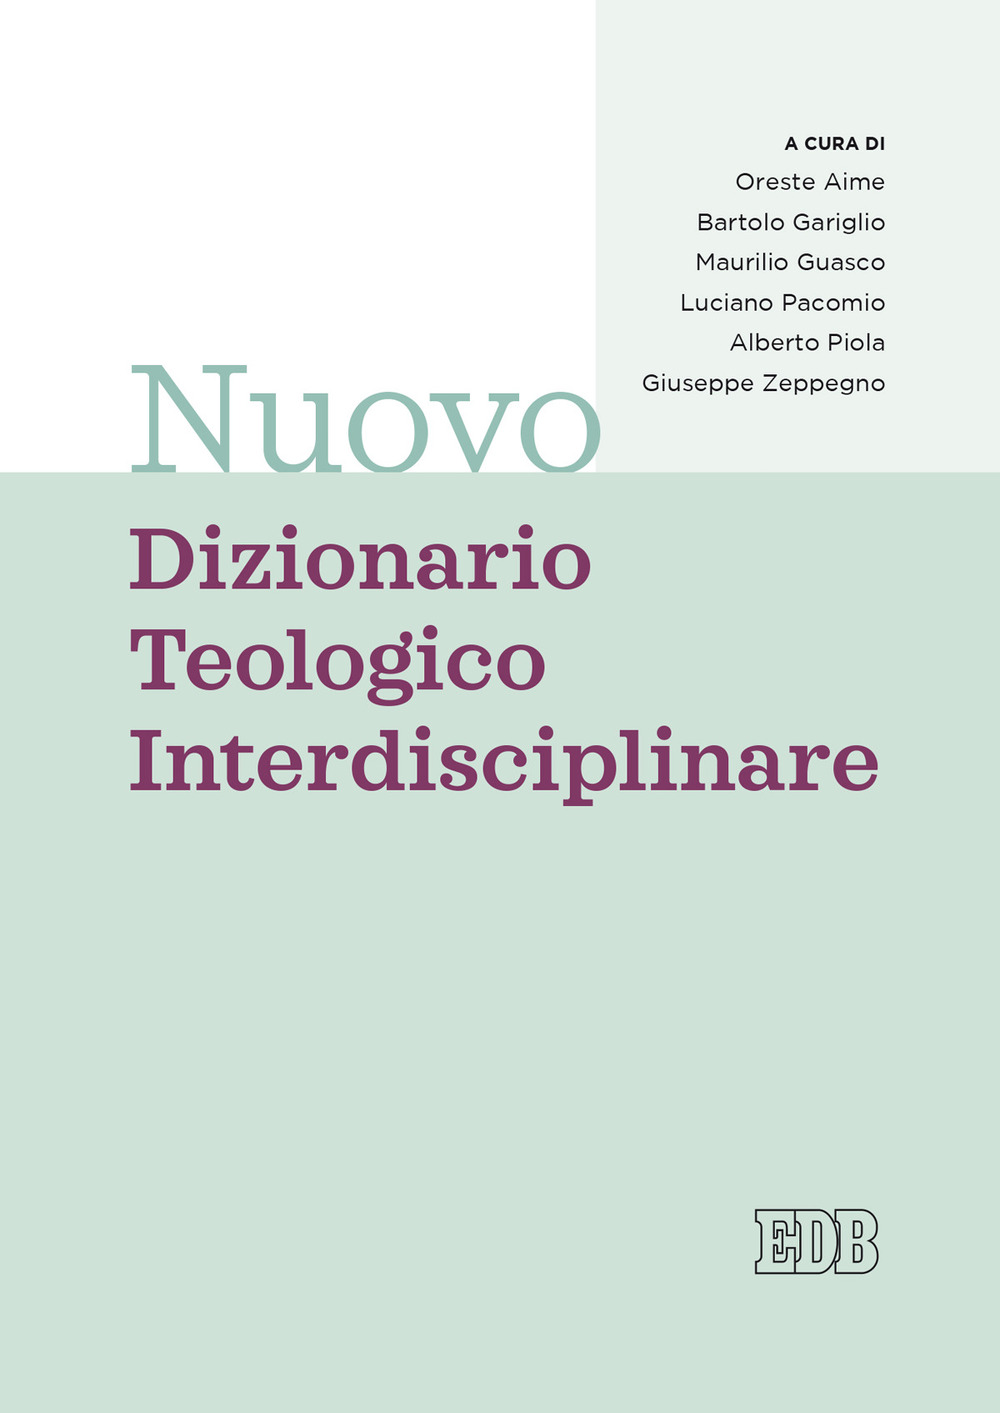 Libri Aime Carlo - Nuovo Dizionario Teologico Interdisciplinare NUOVO SIGILLATO, EDIZIONE DEL 22/10/2020 SUBITO DISPONIBILE